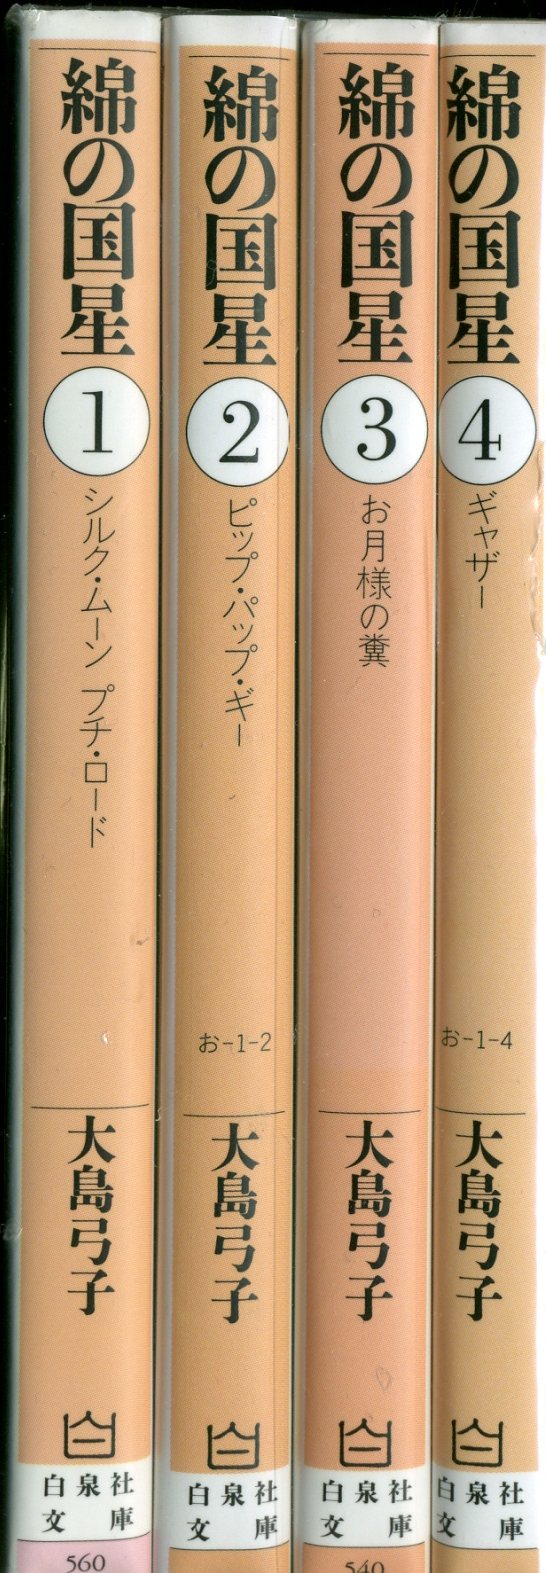 白泉社 白泉社文庫 大島弓子 綿の国星 文庫版 全4巻 セット